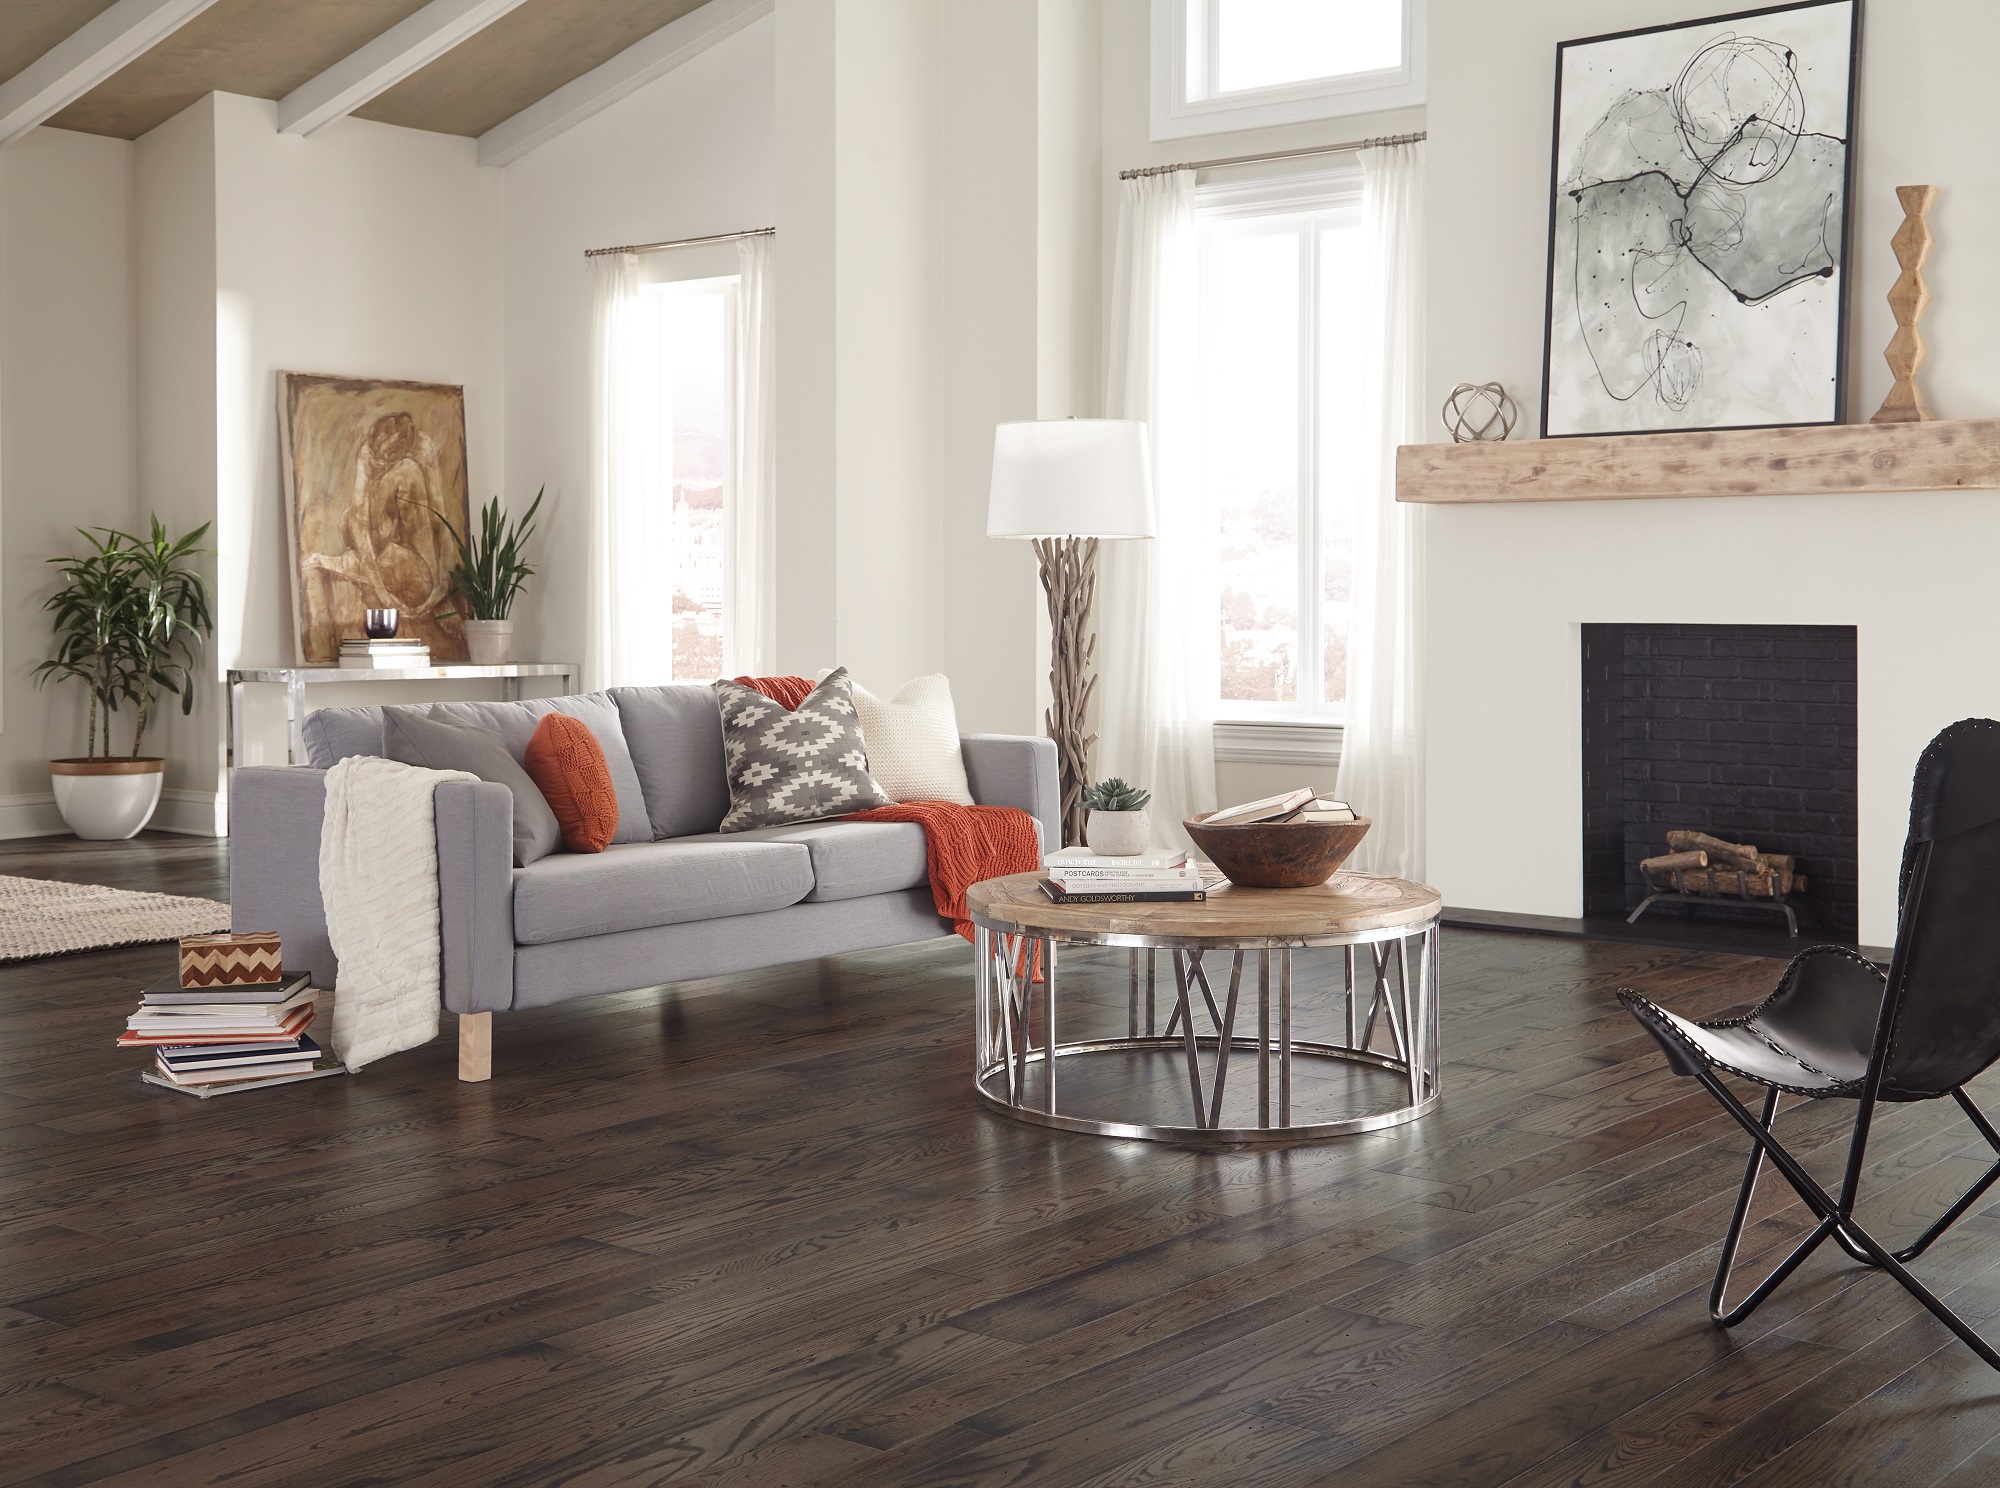 Home Somerset Hardwood Flooring, Hardwood Flooring Made In Usa